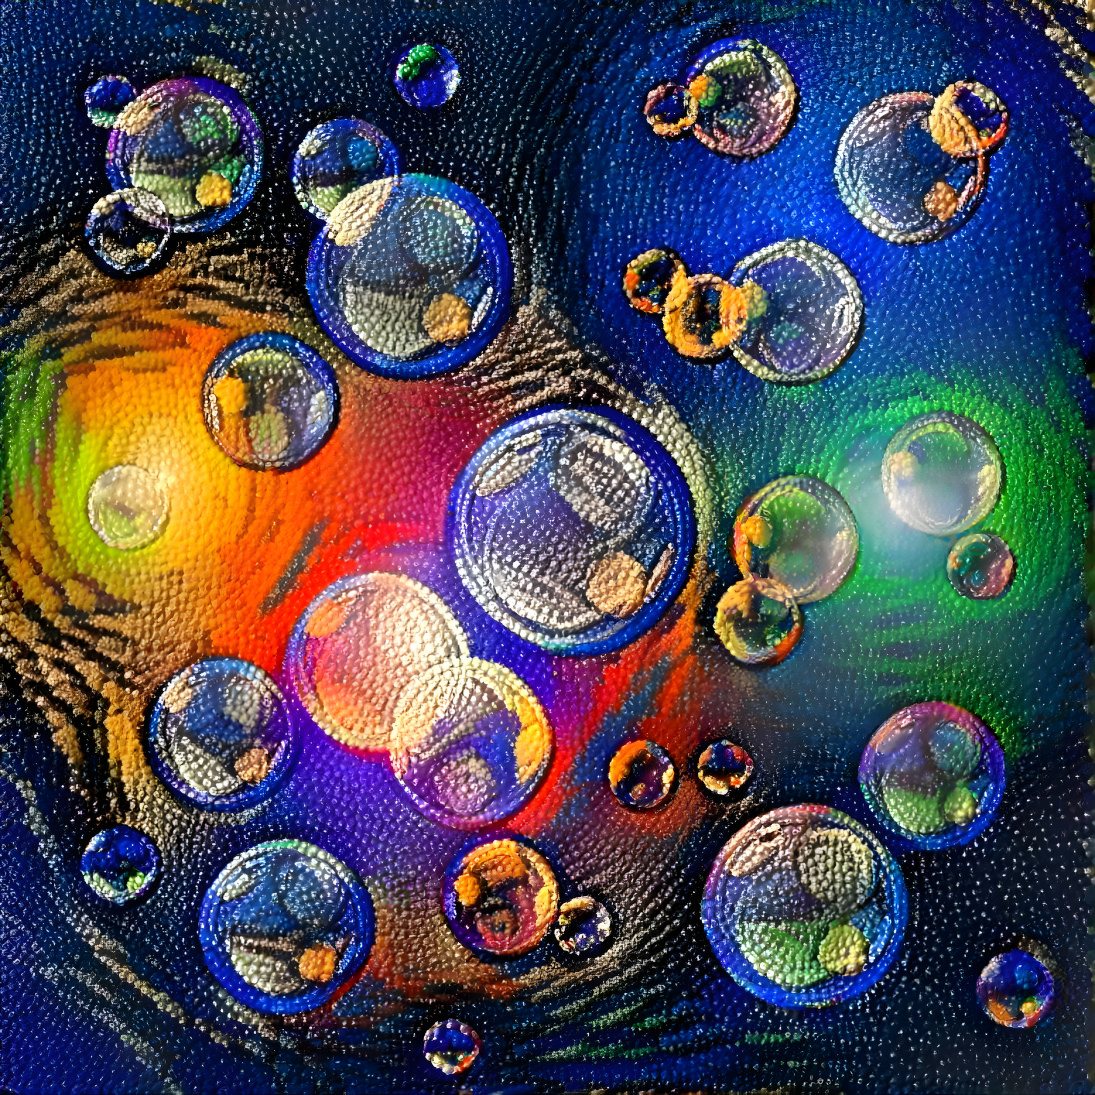 World of Many Bubbles